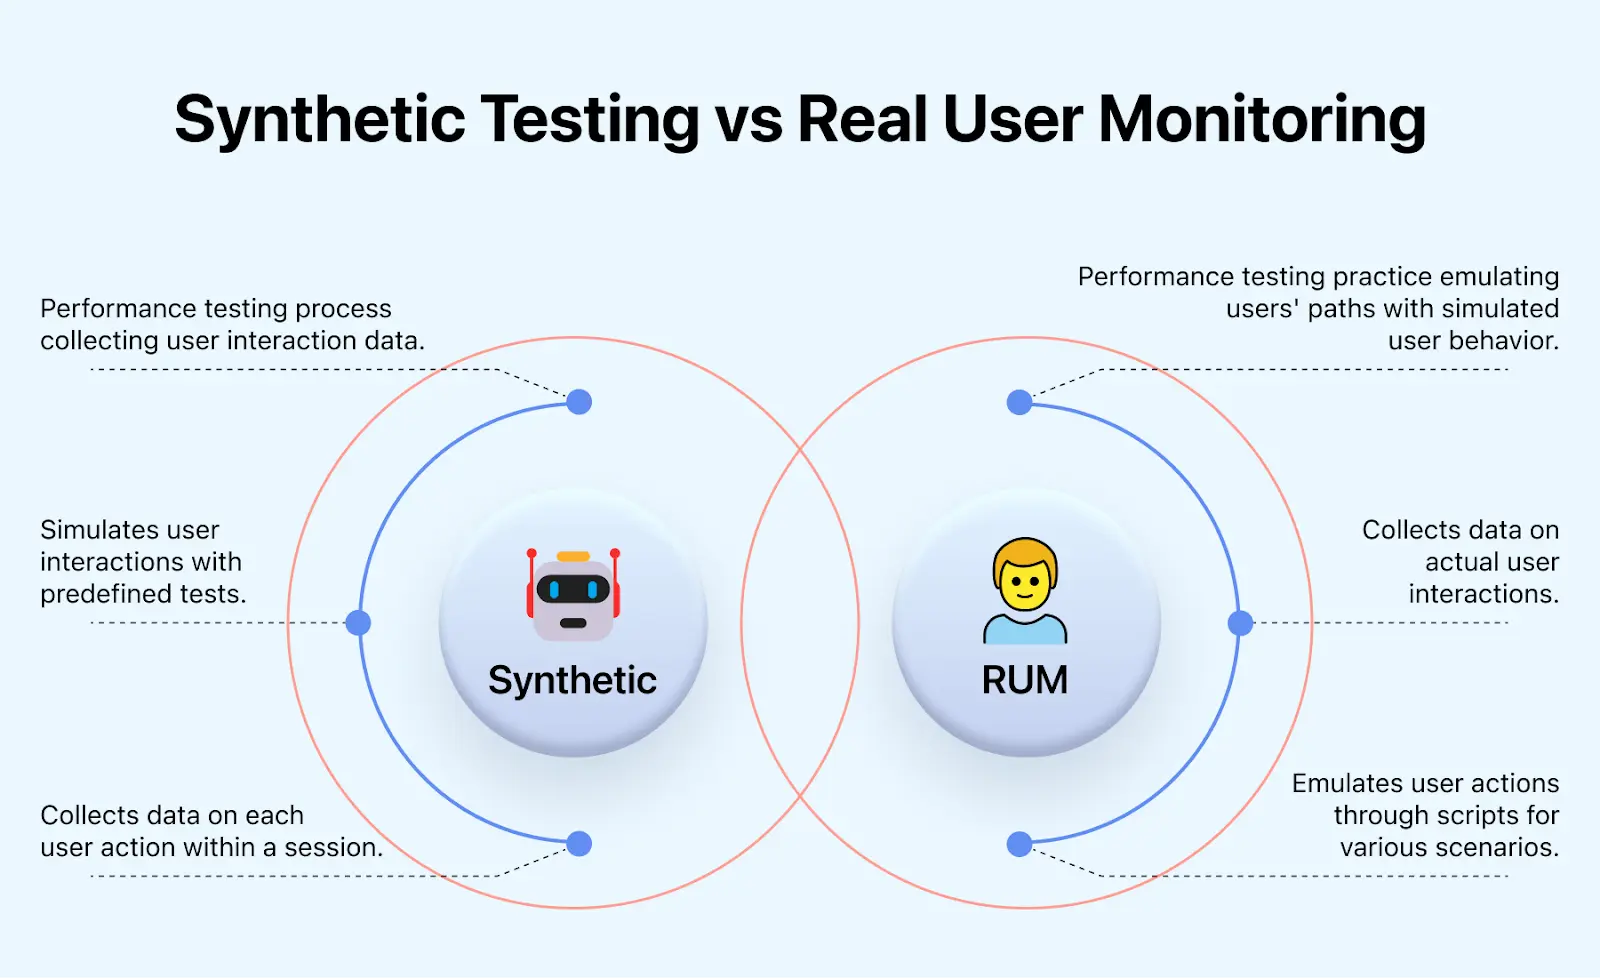 Real User Monitoring monitor